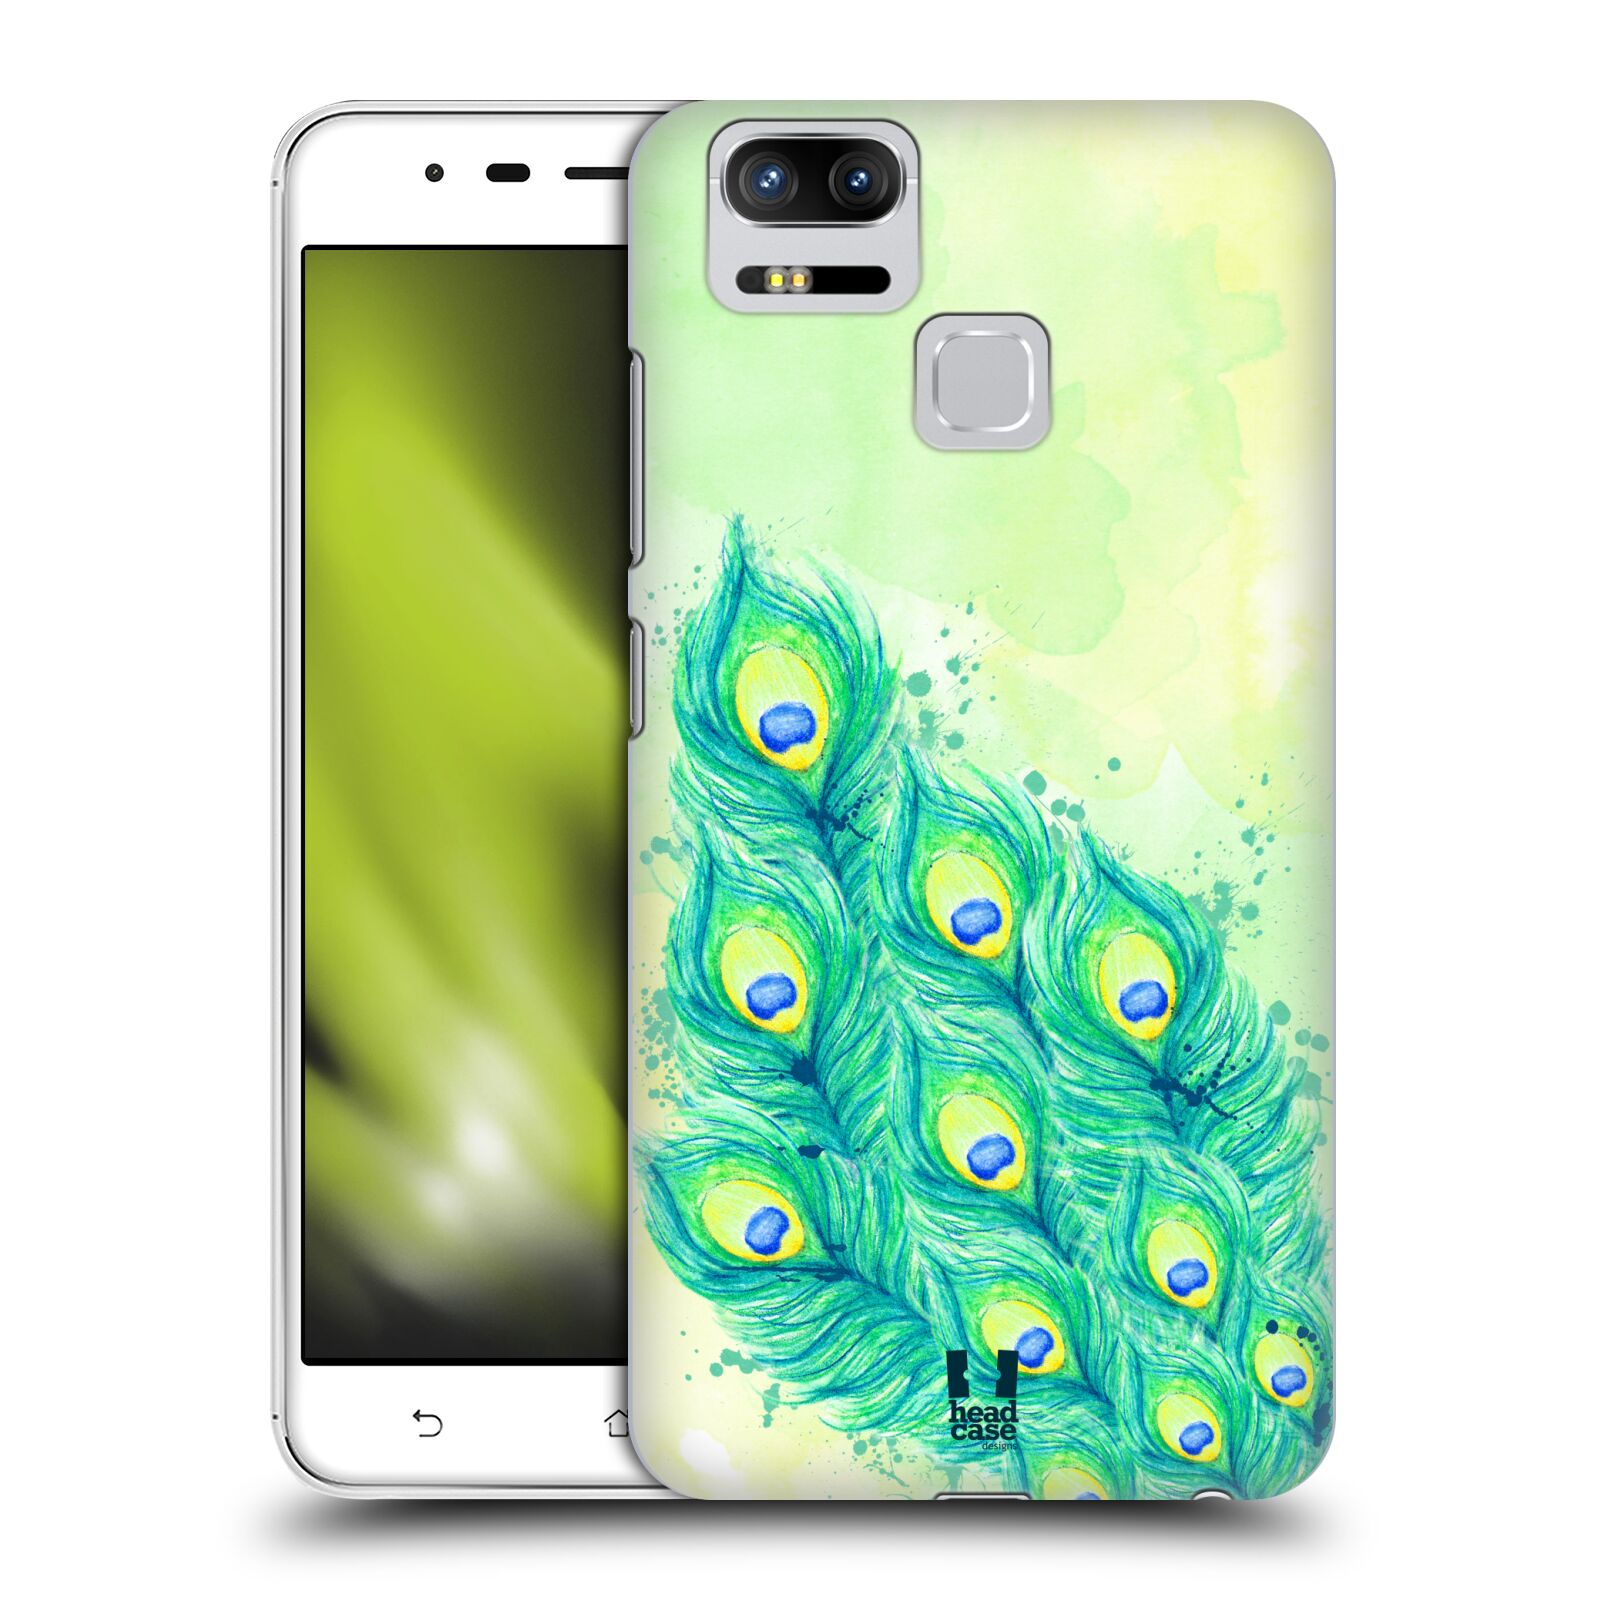 HEAD CASE plastový obal na mobil Asus Zenfone 3 Zoom ZE553KL vzor Paví pírka barevná MODRÁ A ZELENÁ